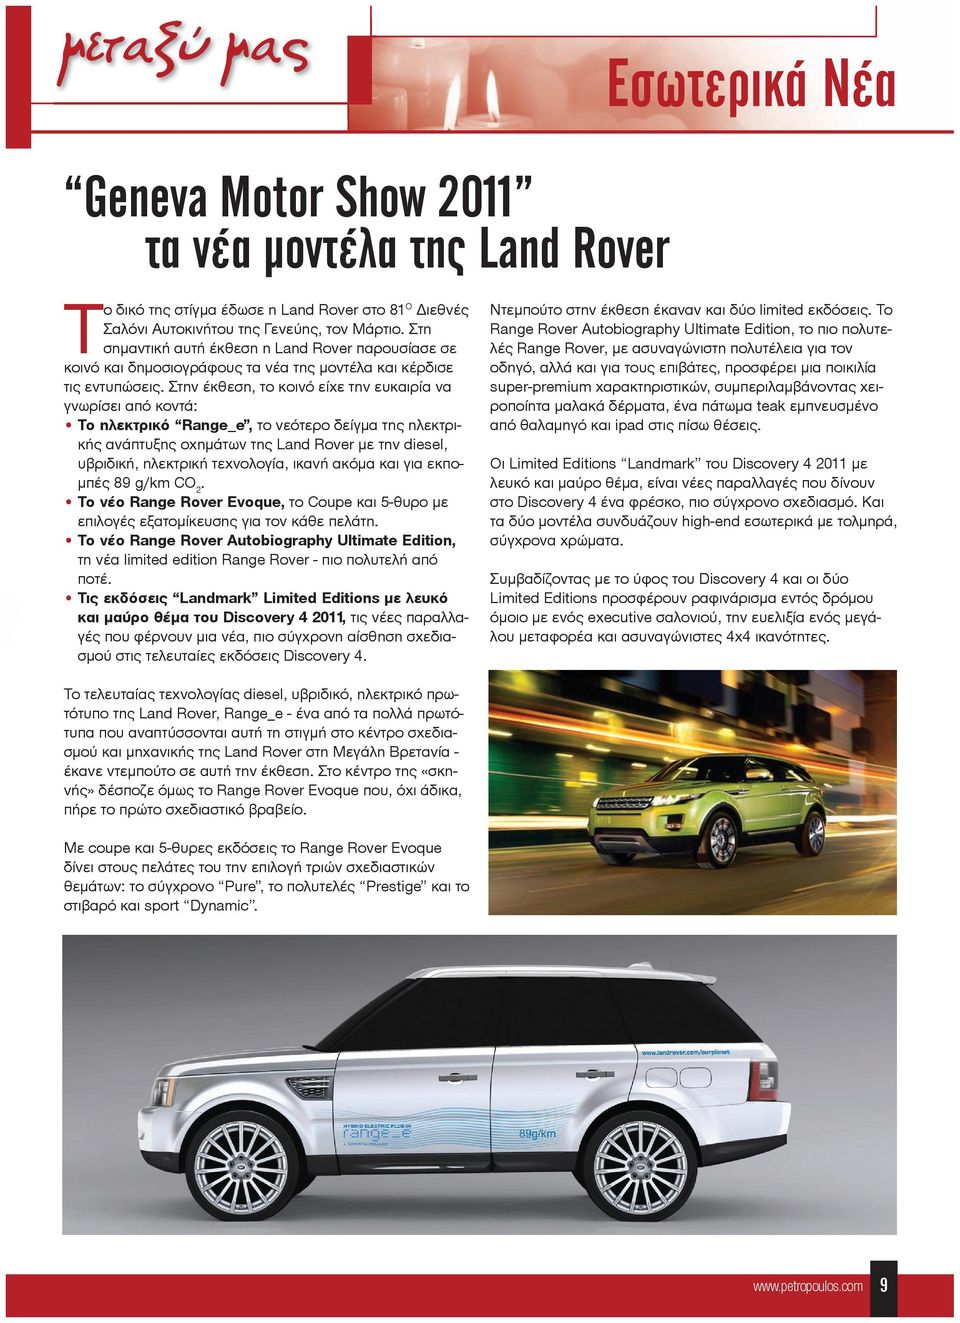 Στην έκθεση, το κοινό είχε την ευκαιρία να γνωρίσει από κοντά: Το ηλεκτρικό Range_e, το νεότερο δείγμα της ηλεκτρικής ανάπτυξης οχημάτων της Land Rover με την diesel, υβριδική, ηλεκτρική τεχνολογία,